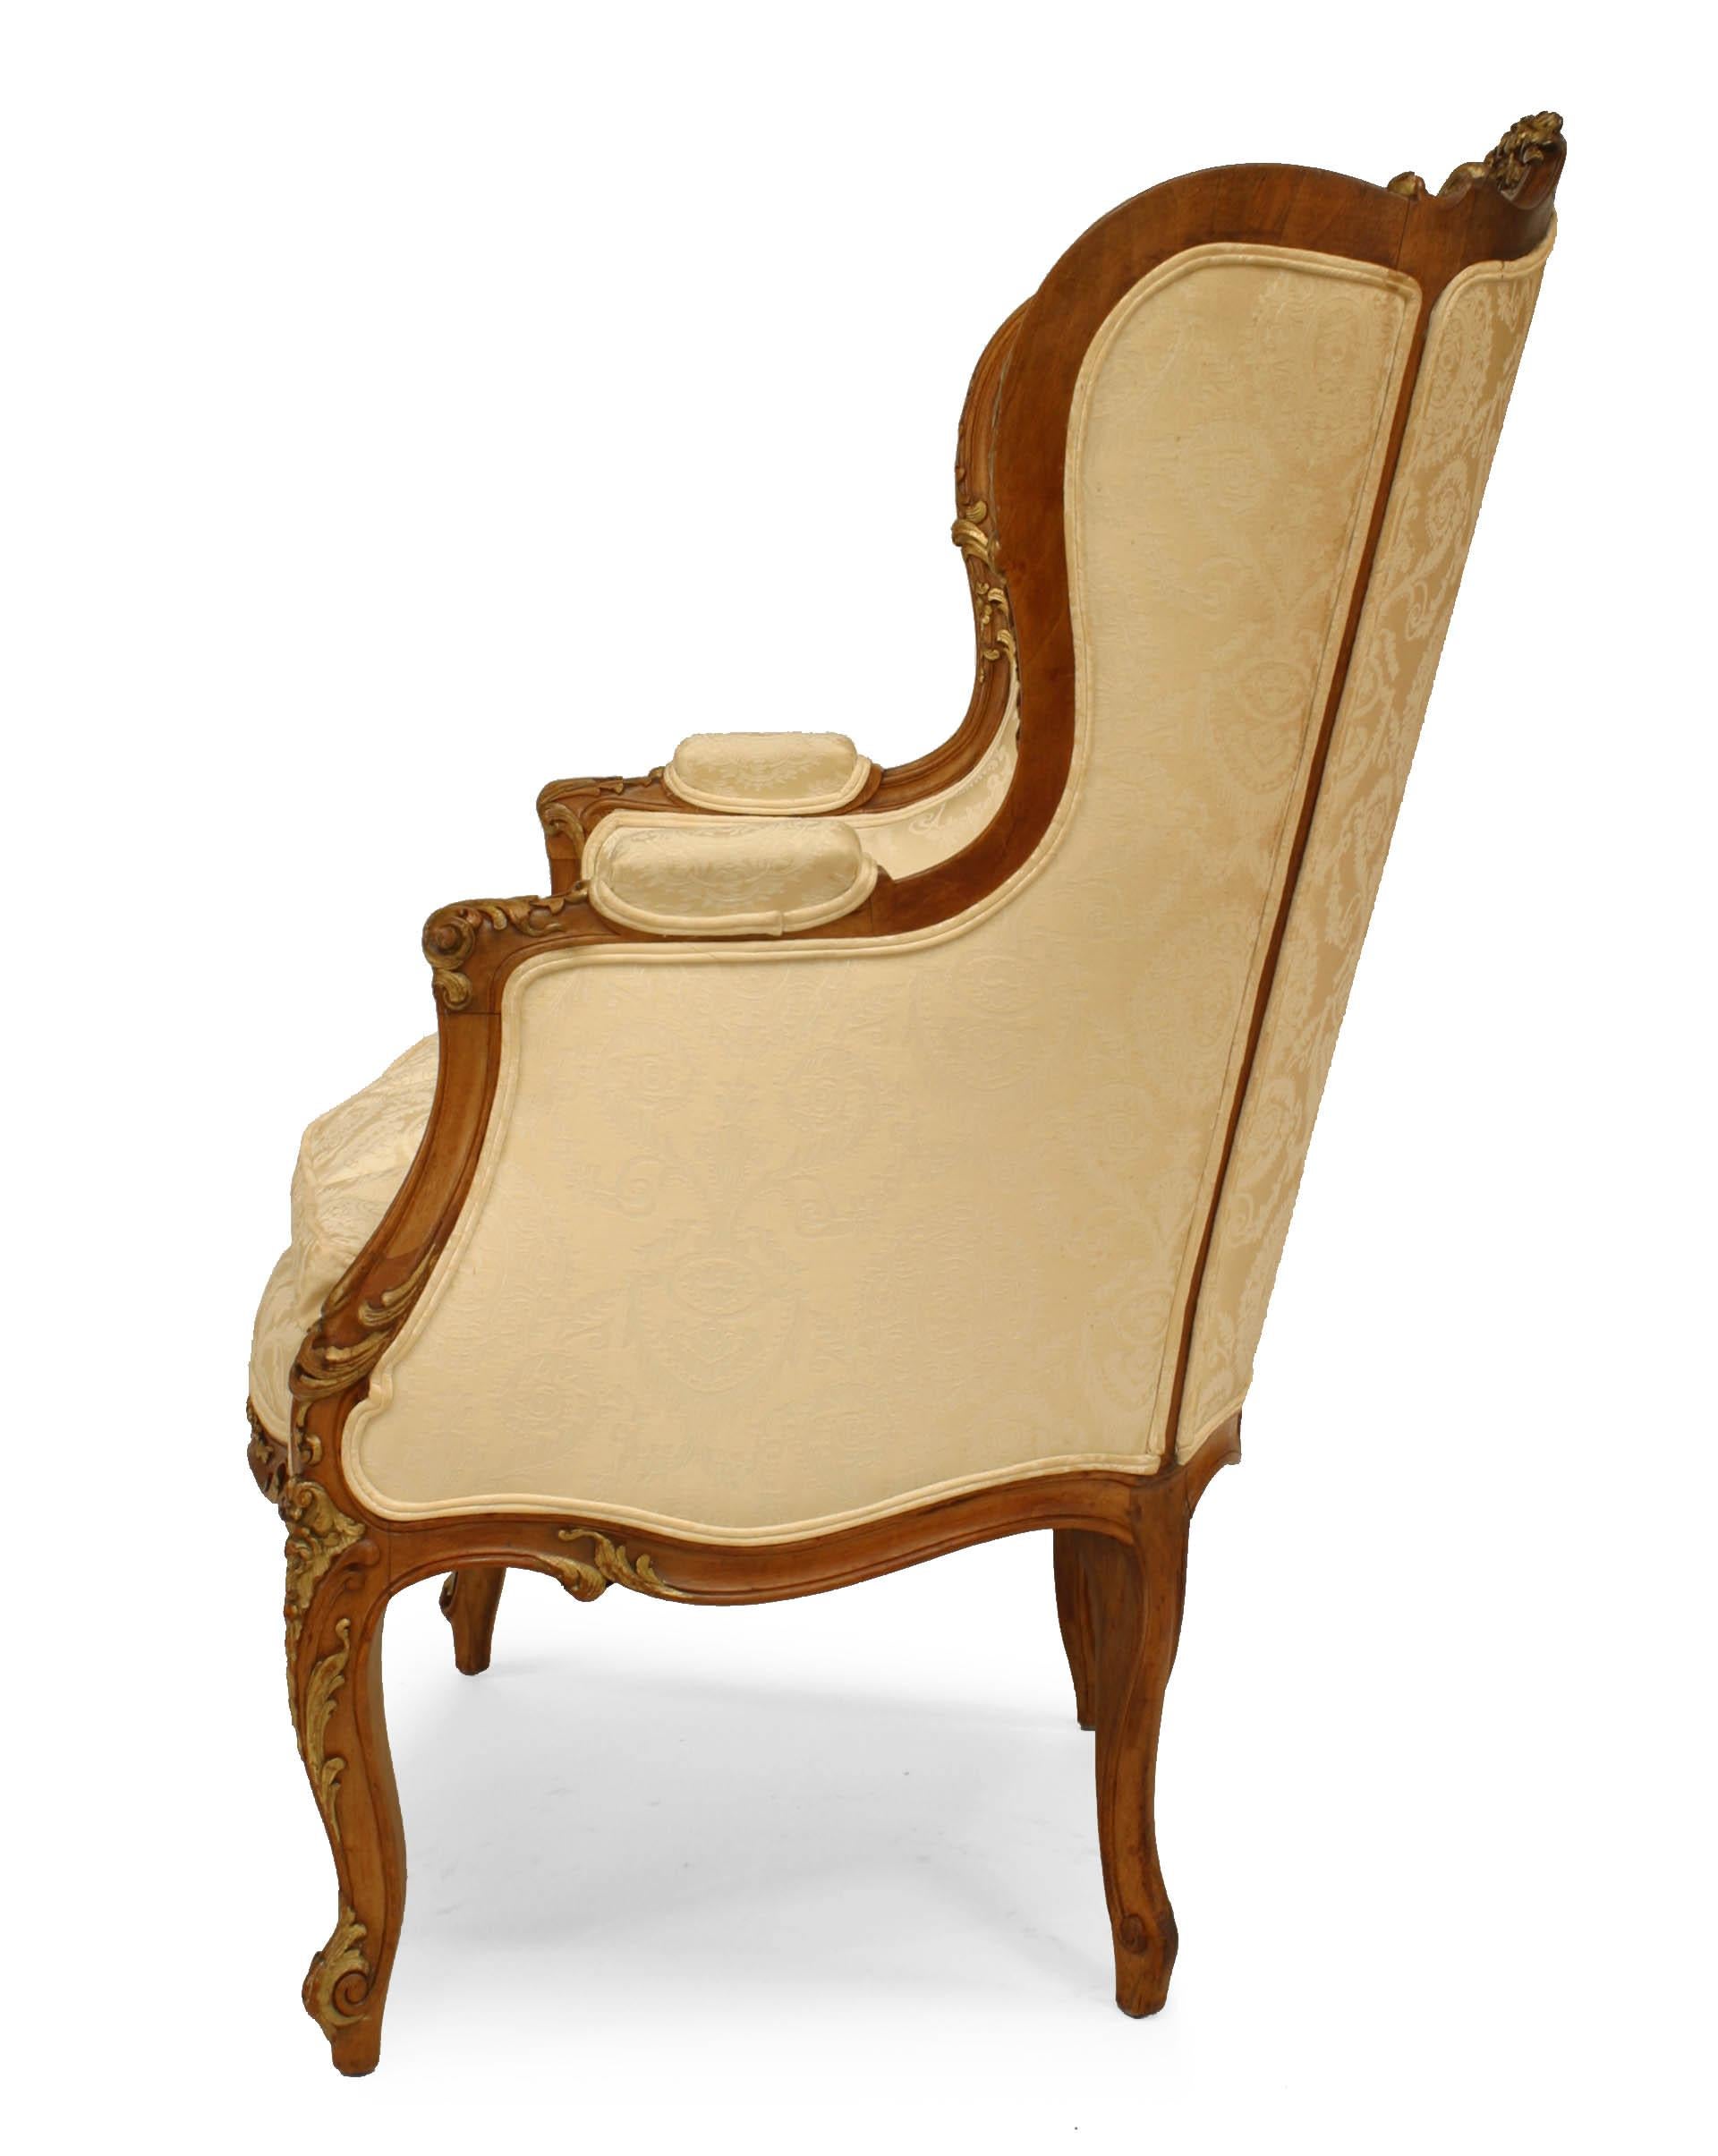 Ende des 19., Anfang des 20. Jahrhunderts, französischer Sessel im Louis-XV-Stil aus Nussbaumholz mit vergoldeten Verzierungen, weißer Polsterung und Flügelrücken.